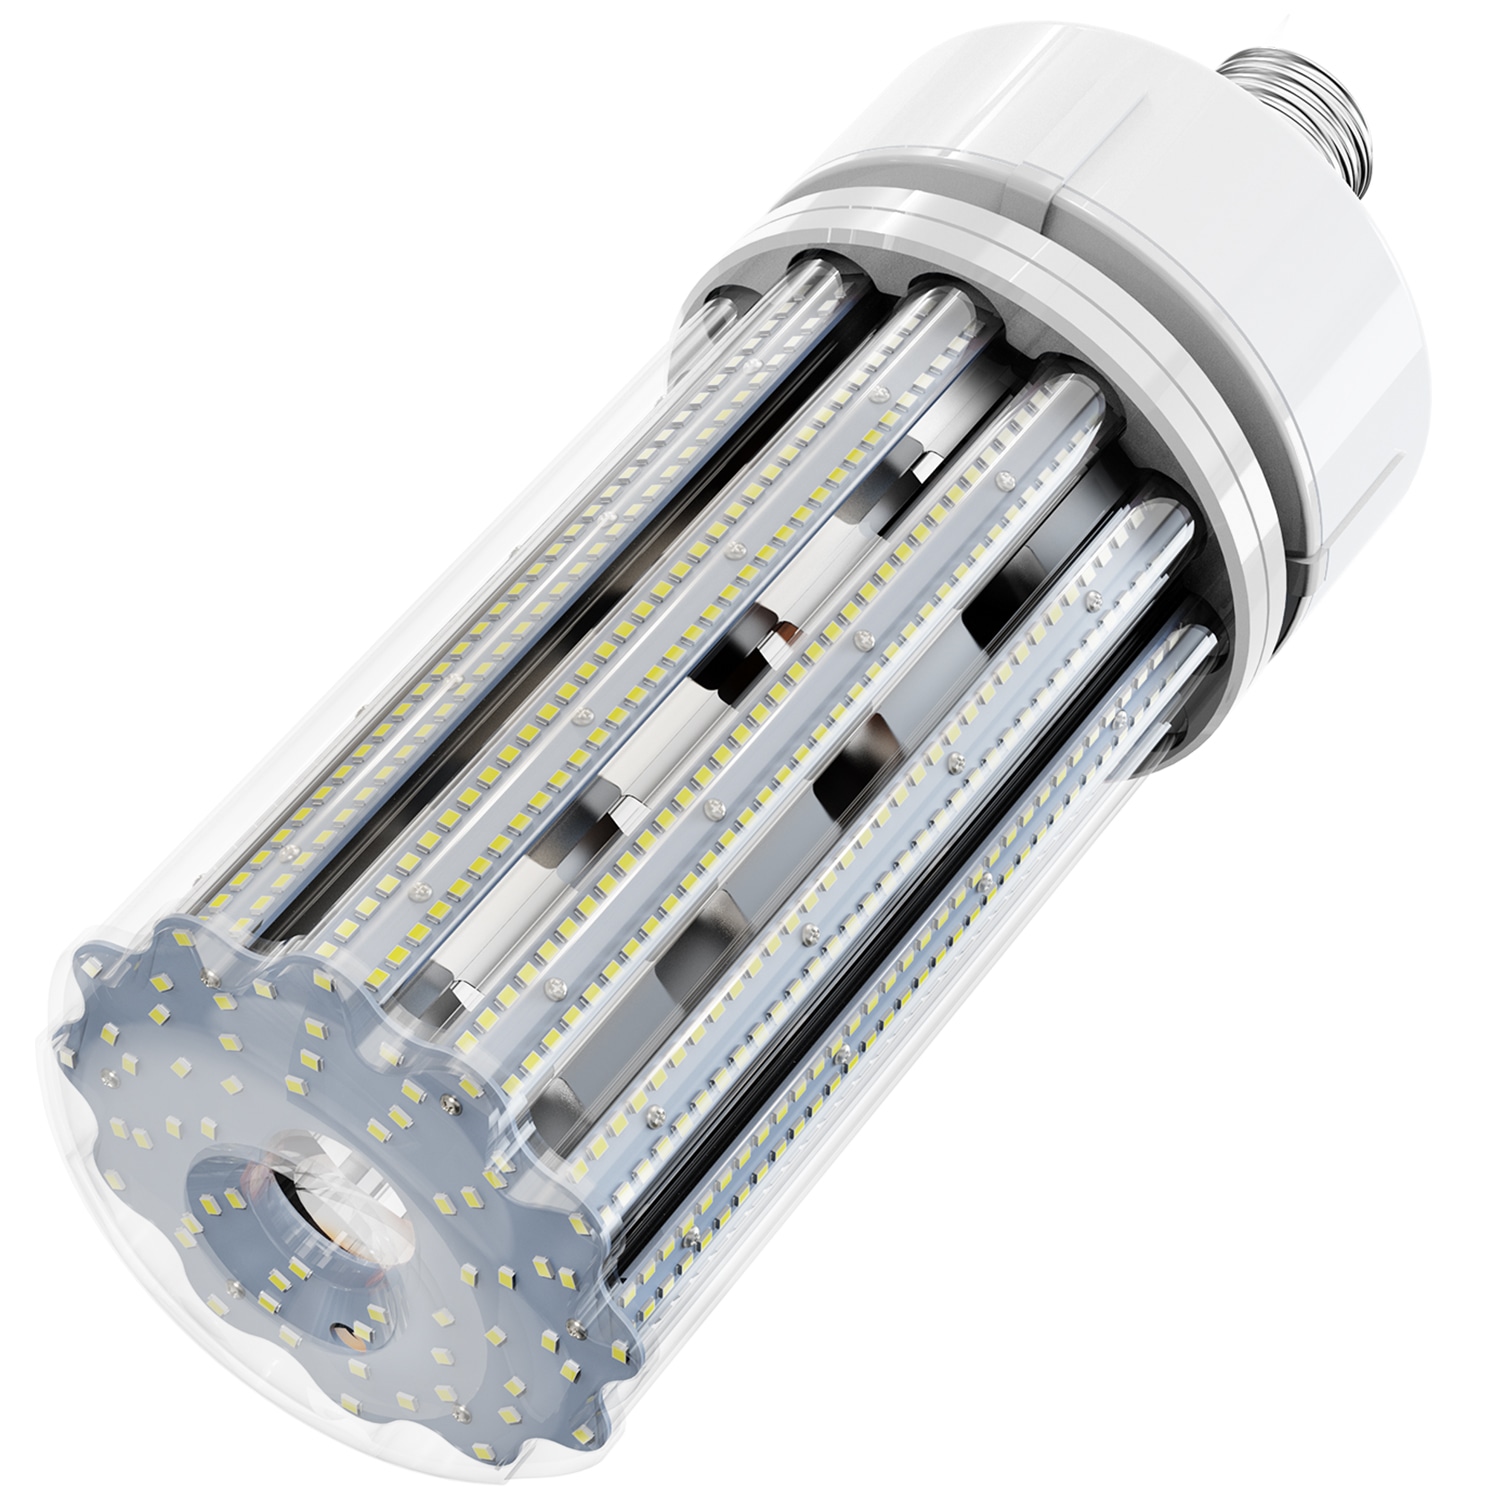 ACL-1 led corn light bulbs